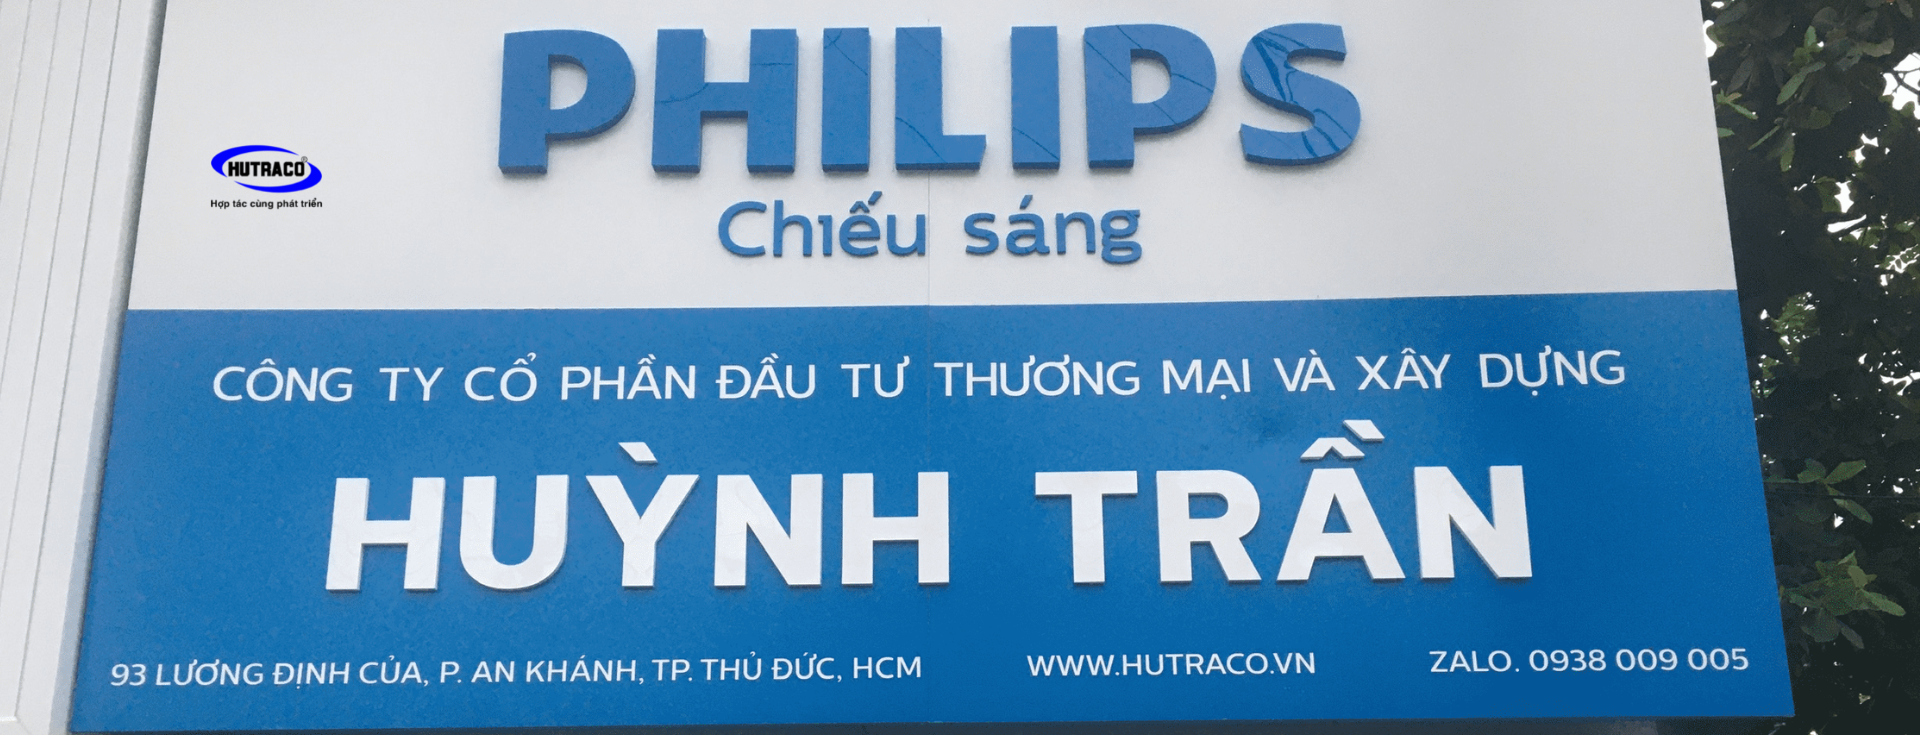 Đèn Led Philips Huỳnh Trần Hơn 10 Năm Phân Phối Đèn Led Philips Chính Hãng